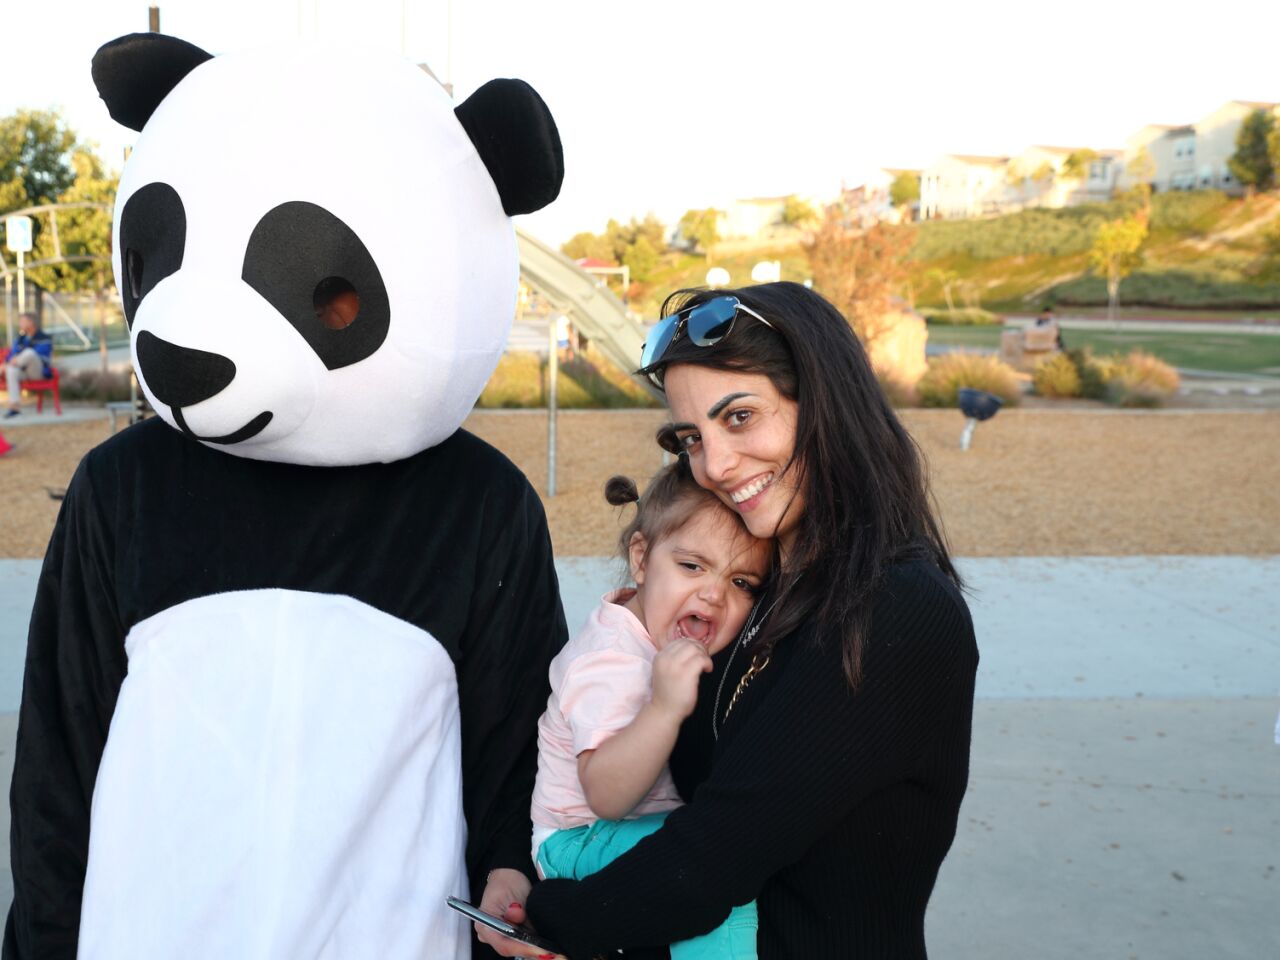 Misha and Maya Haffar with Panda mascot